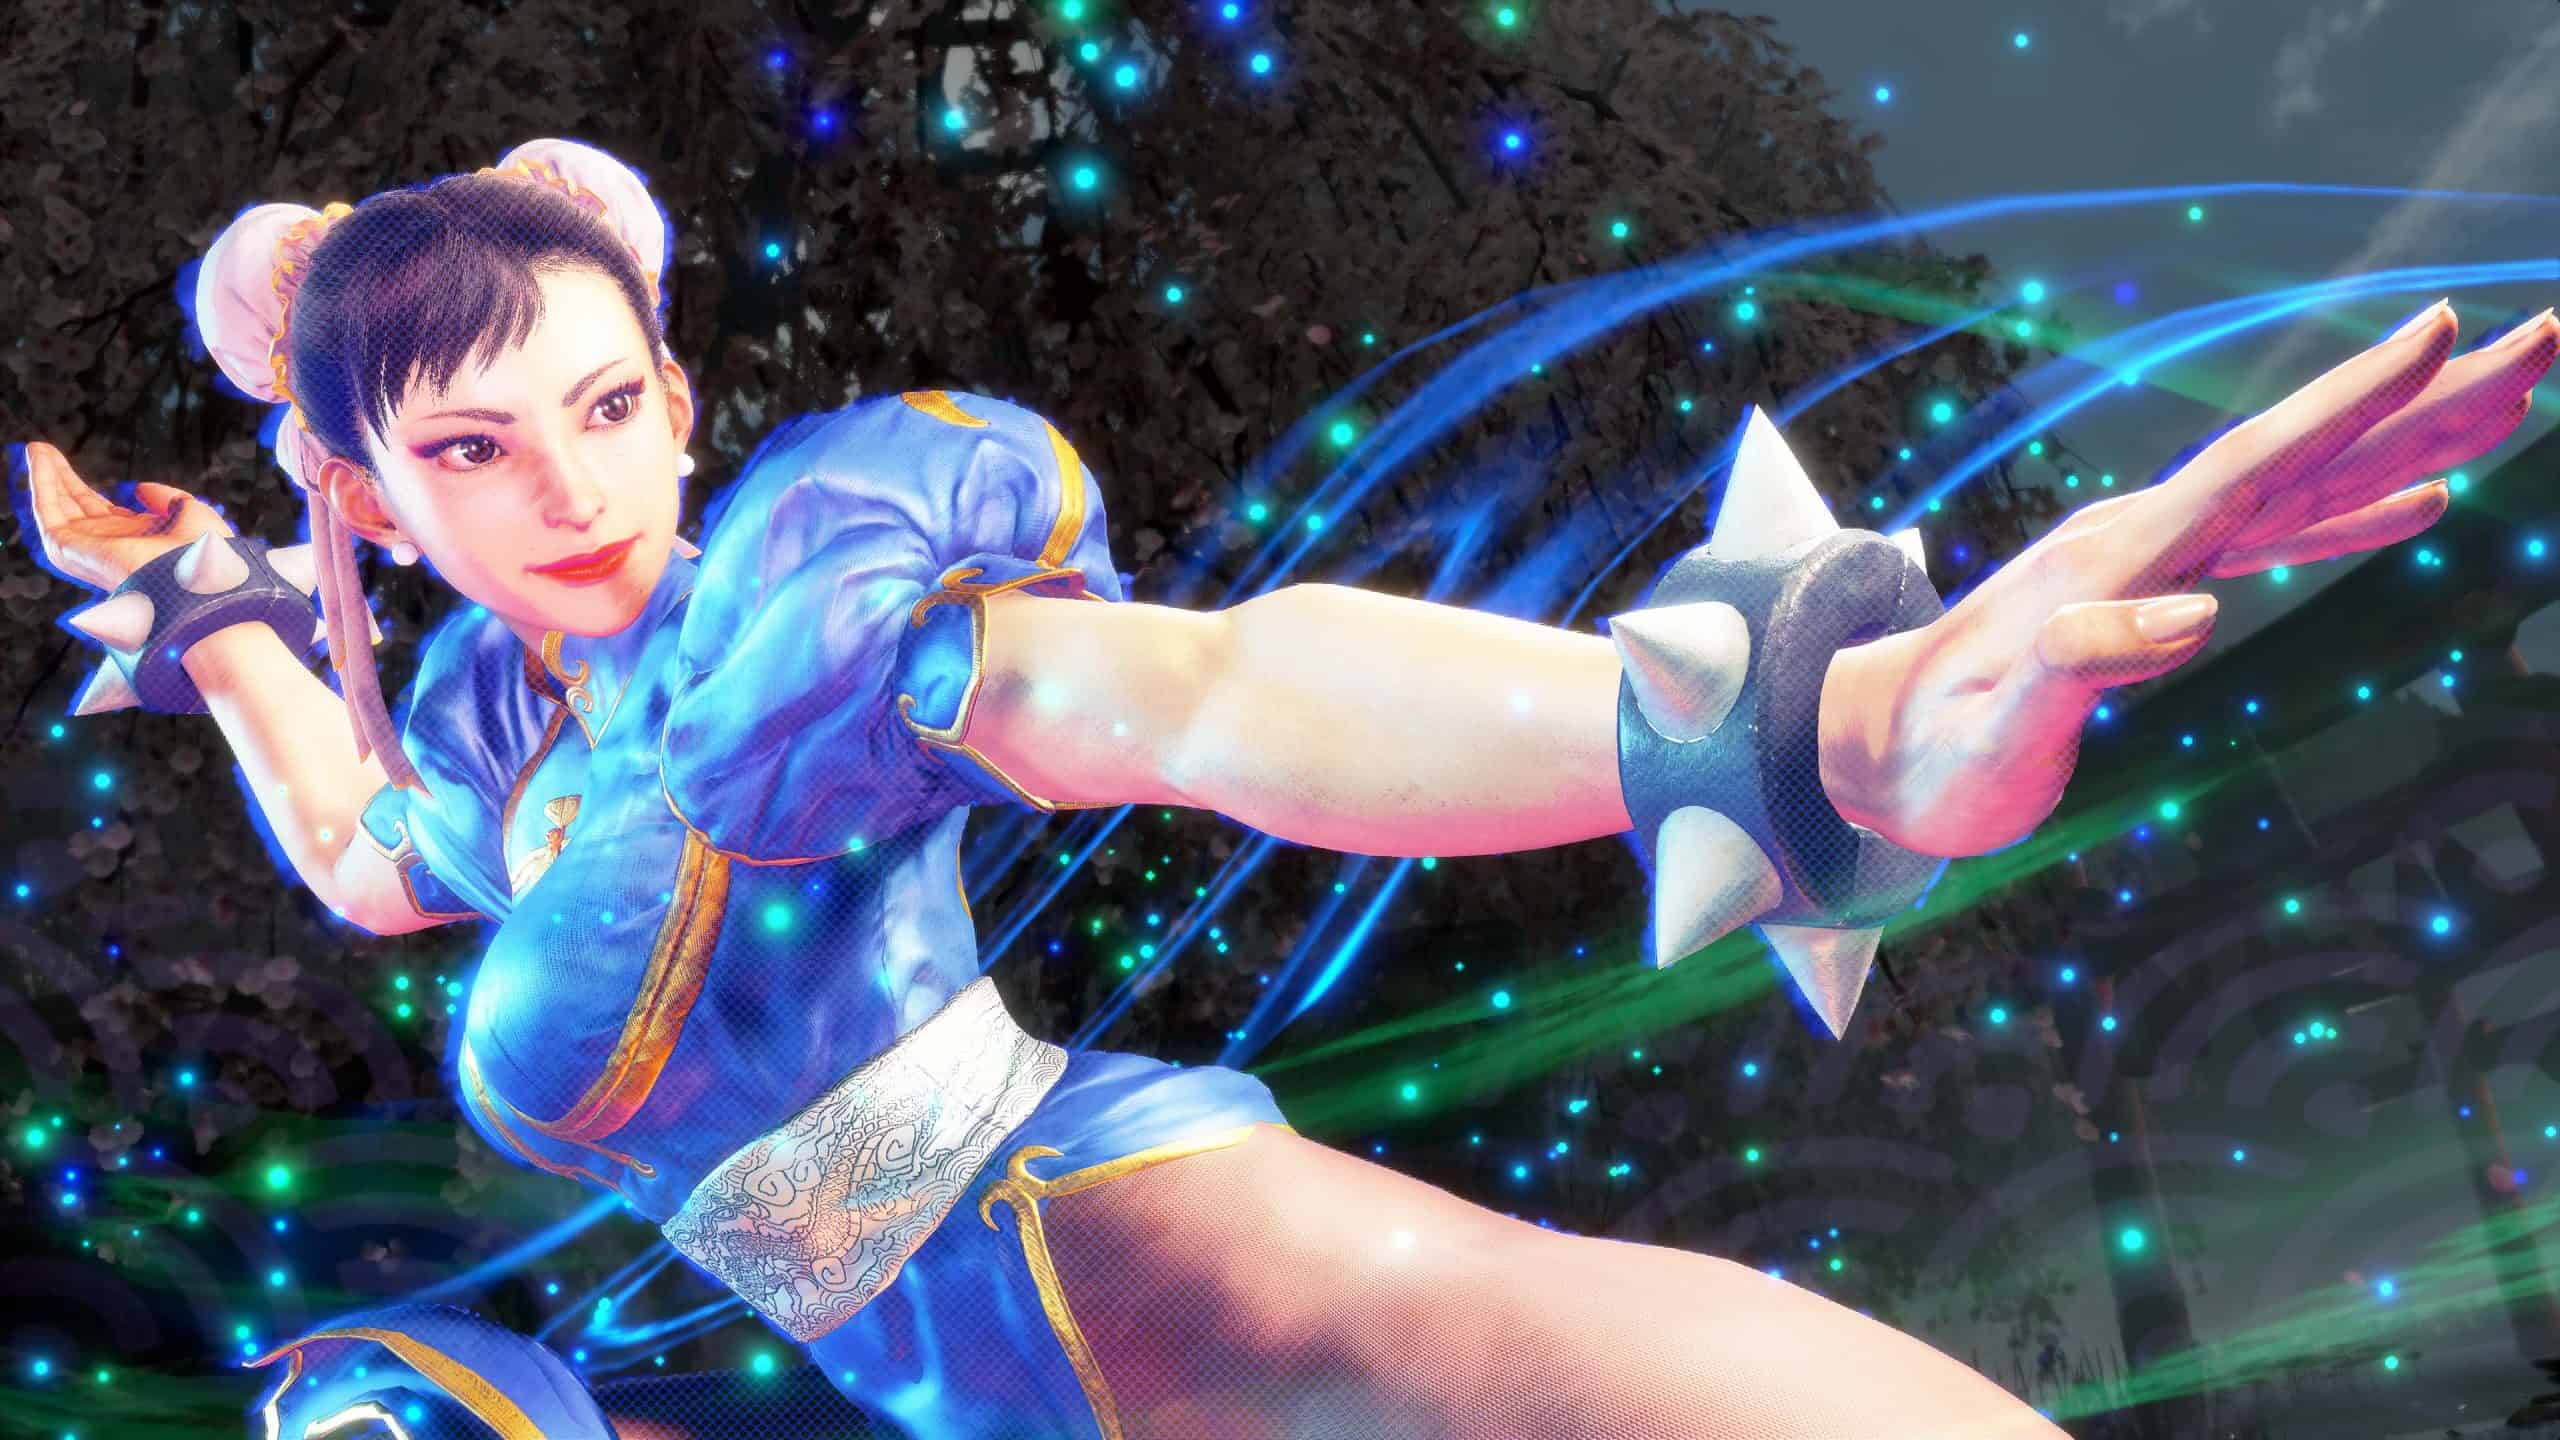 Chun Li in her Street Fighter 2 Costume.